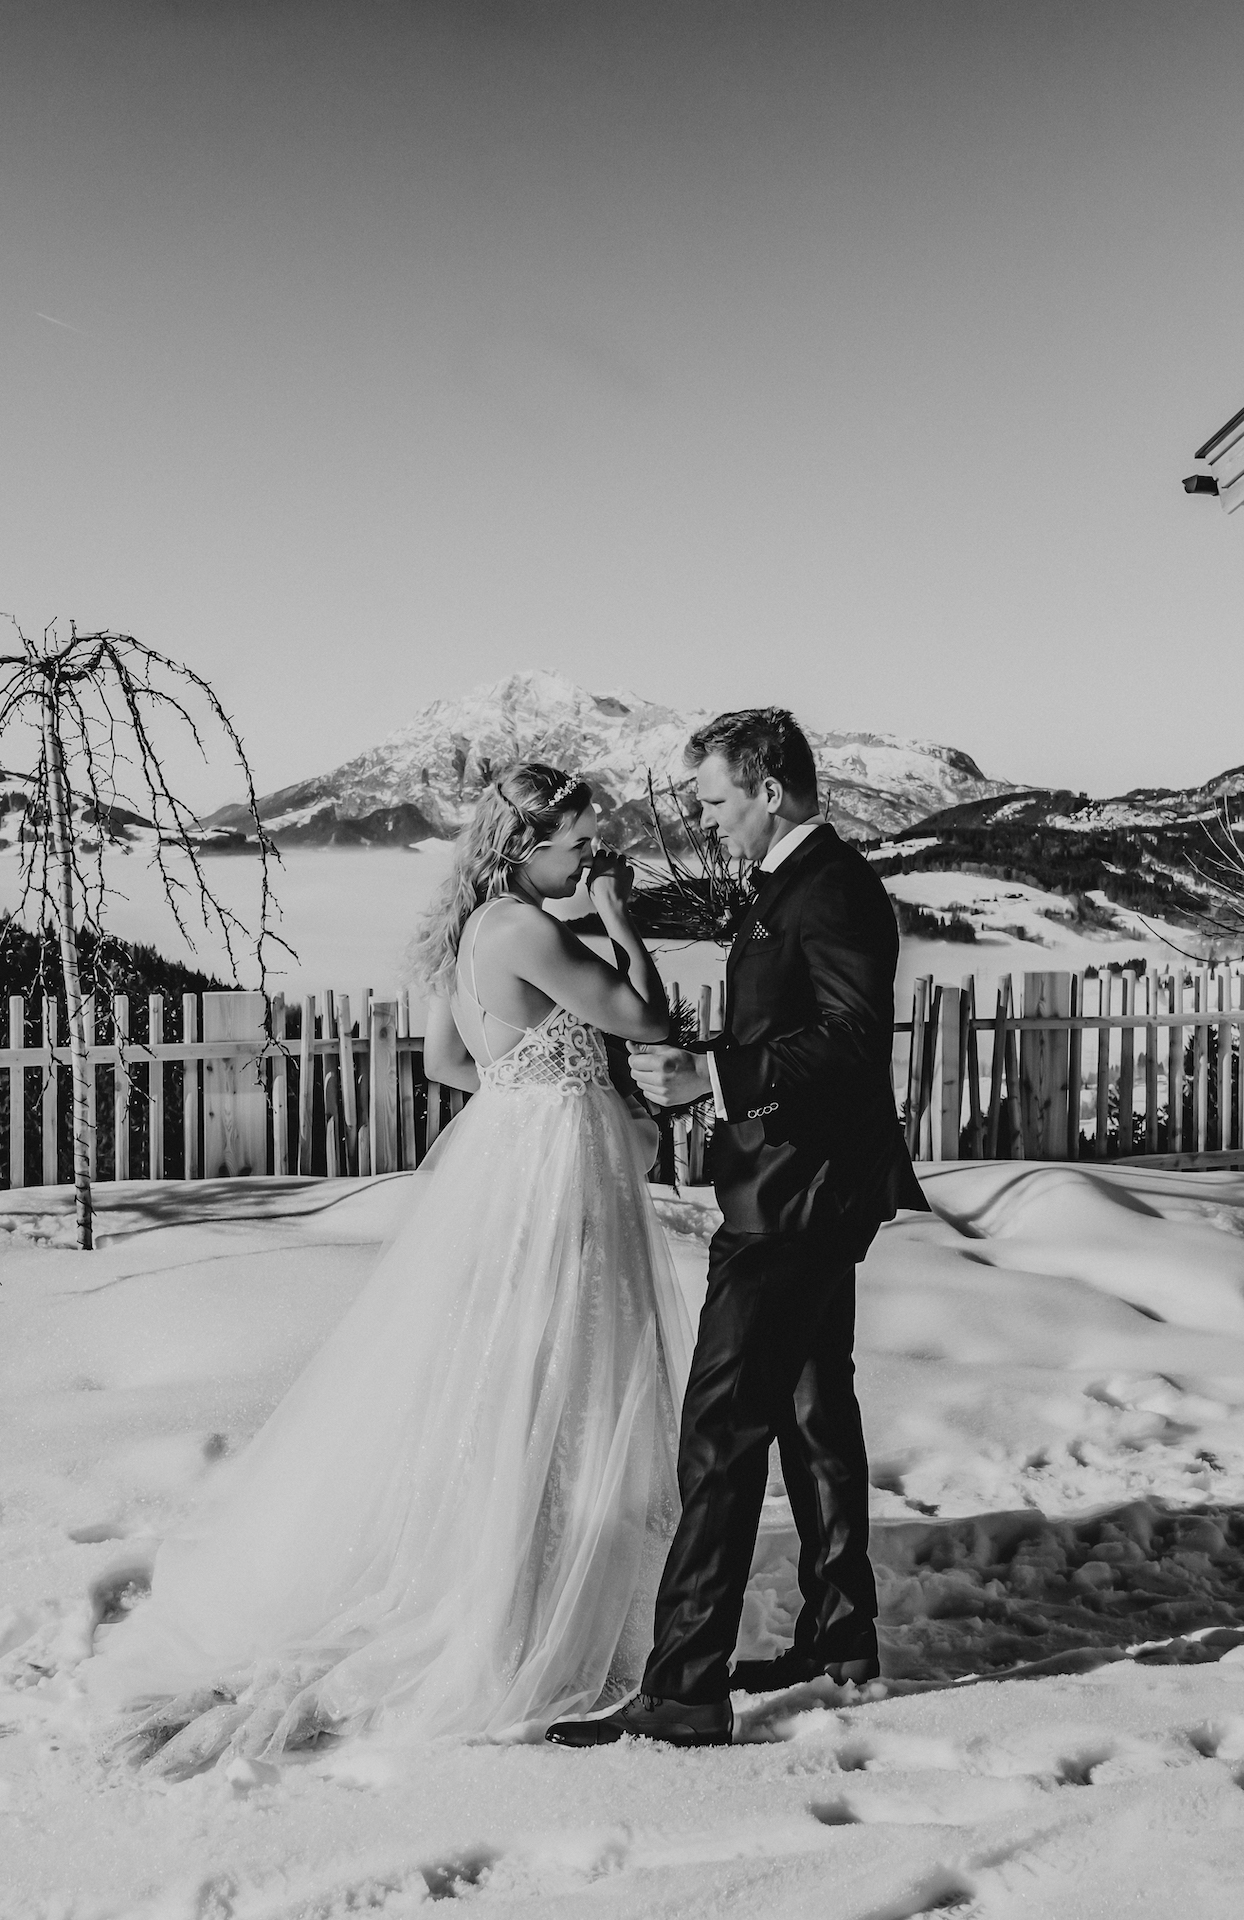 Ronja Baumbach Hochzeiten First Look Bride and groom vor einer atemberaubenden Bergkulisse in Österreich im Schnee